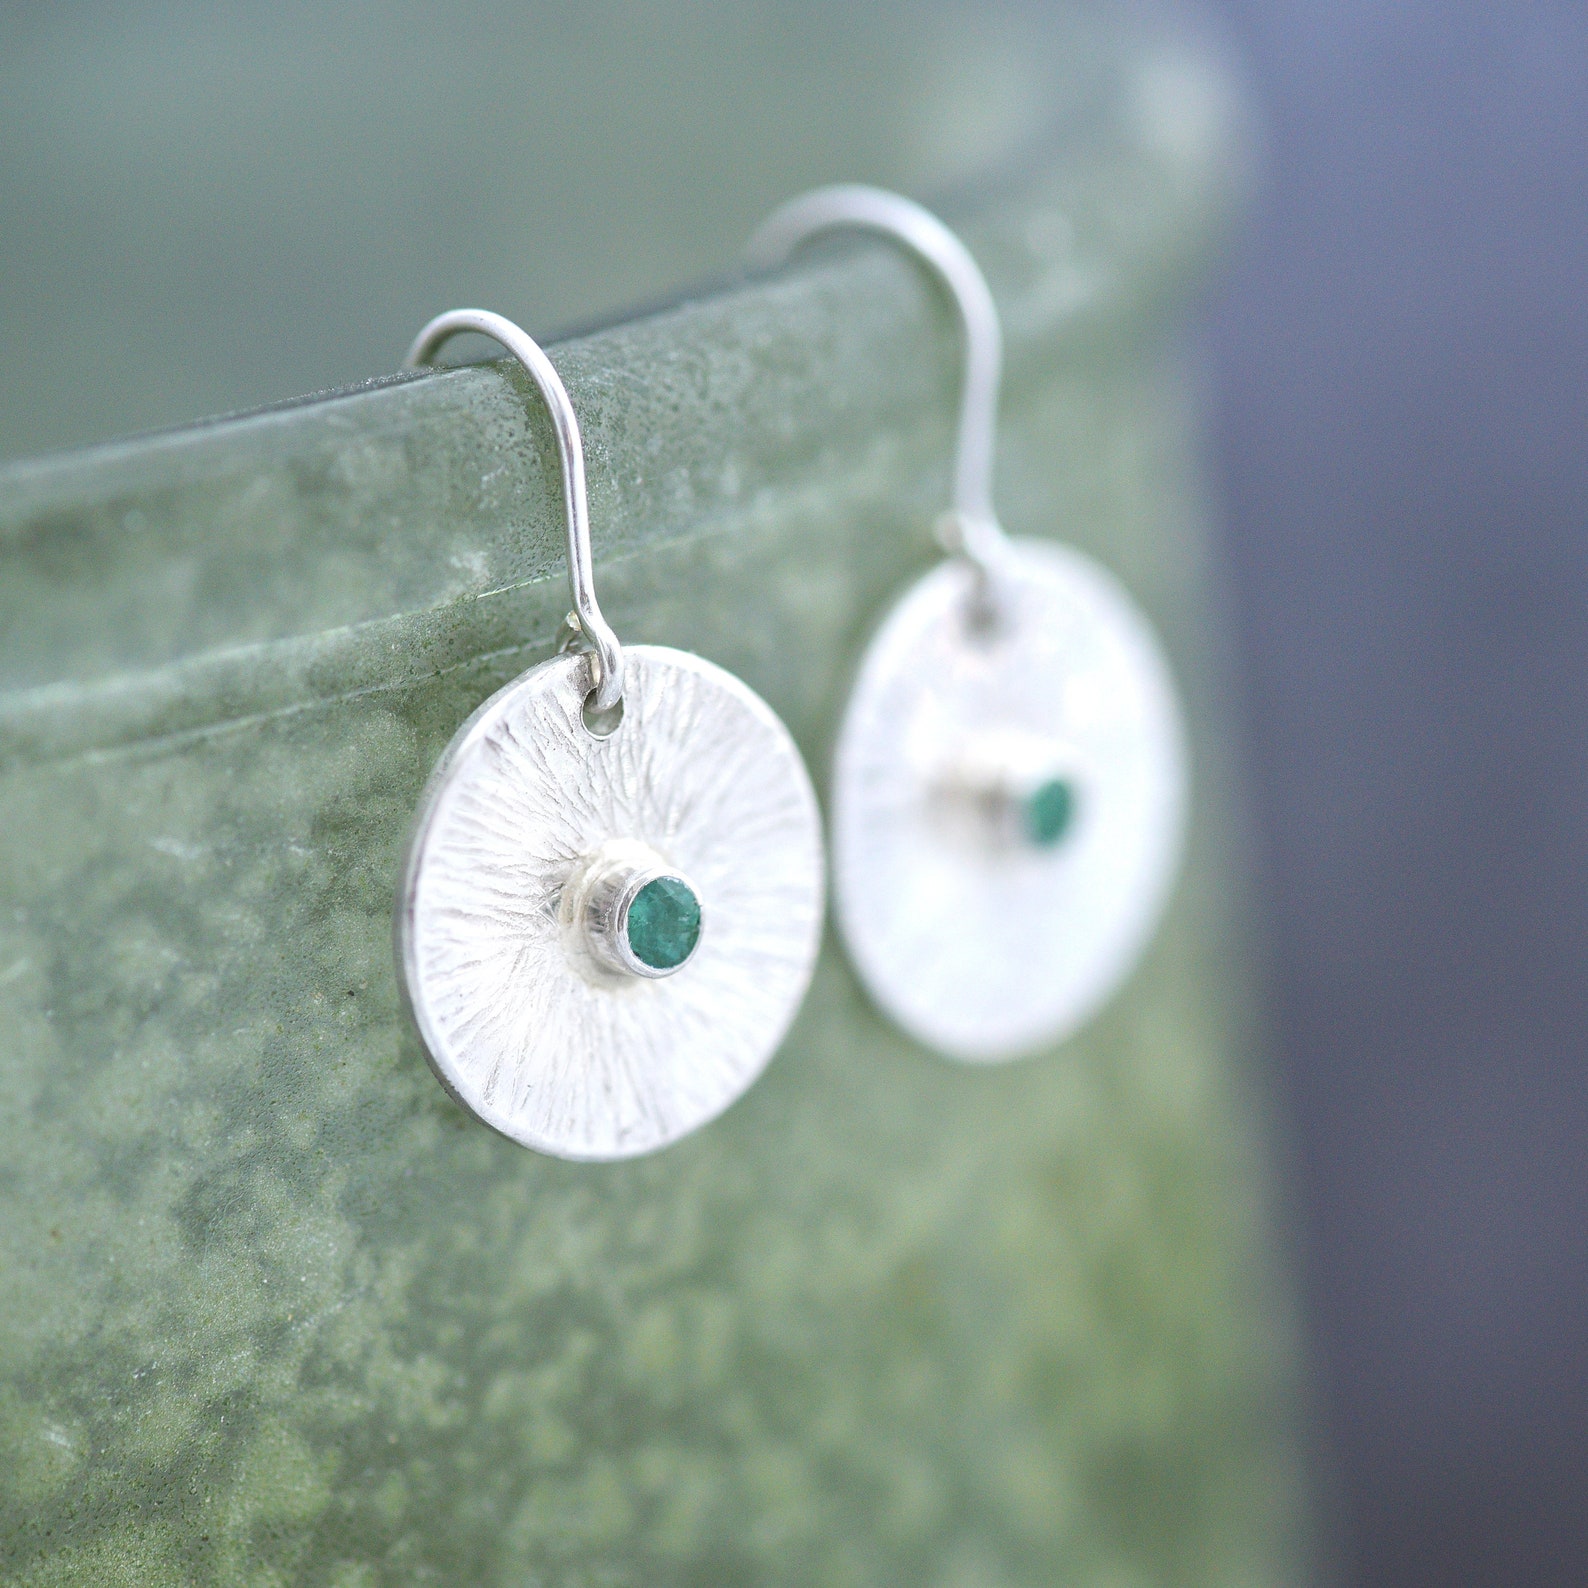 gemstone earrings - Emetrald jewellery